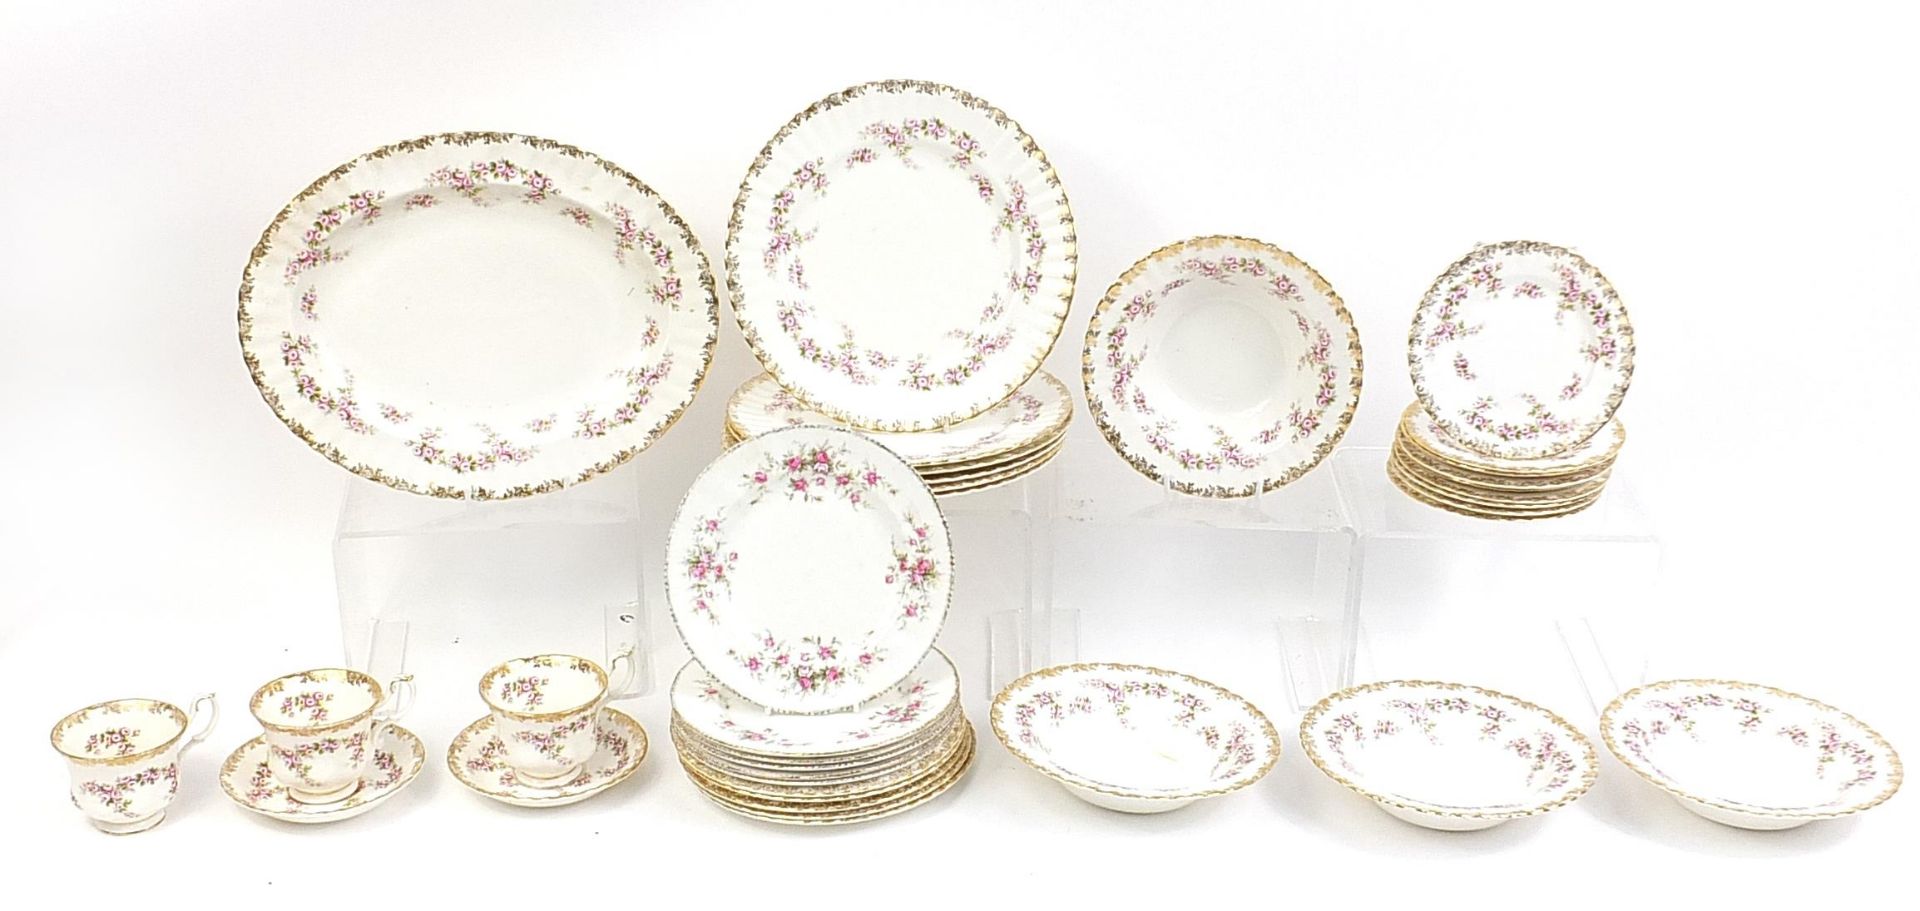 Royal Albert Dimiti Rose tea and dinner ware including a large platter, the platter 35cm in diameter